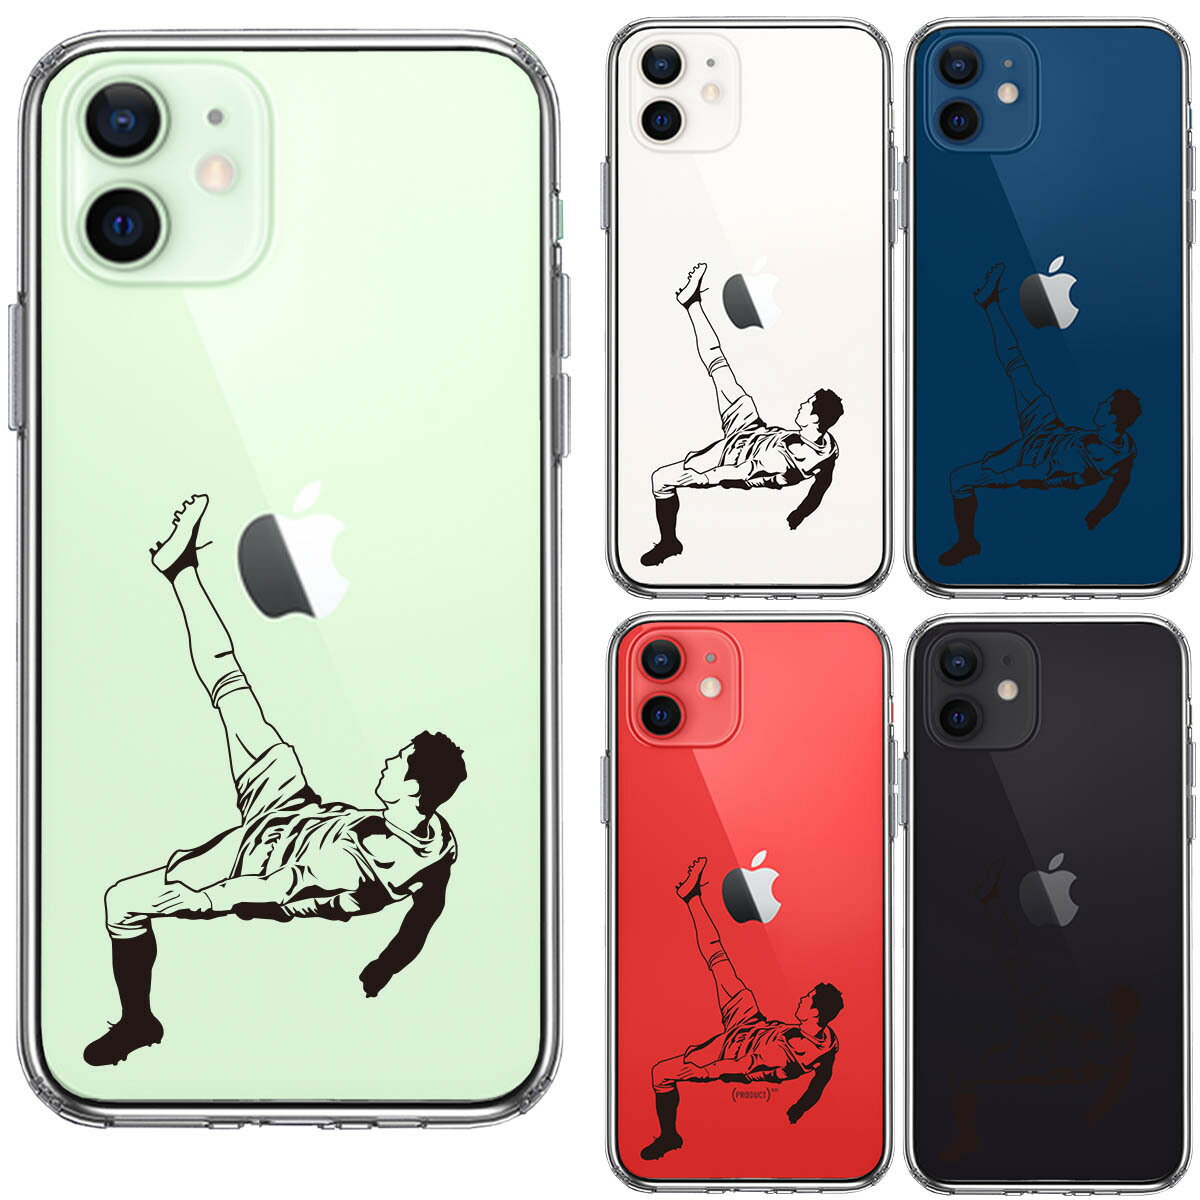 iPhone11 スマホケース サッカー オーバーヘッド キック クール かっこいい スポーツ アップルマーク クリアケース 透明 シンプル iPhoneケース Happy Hit